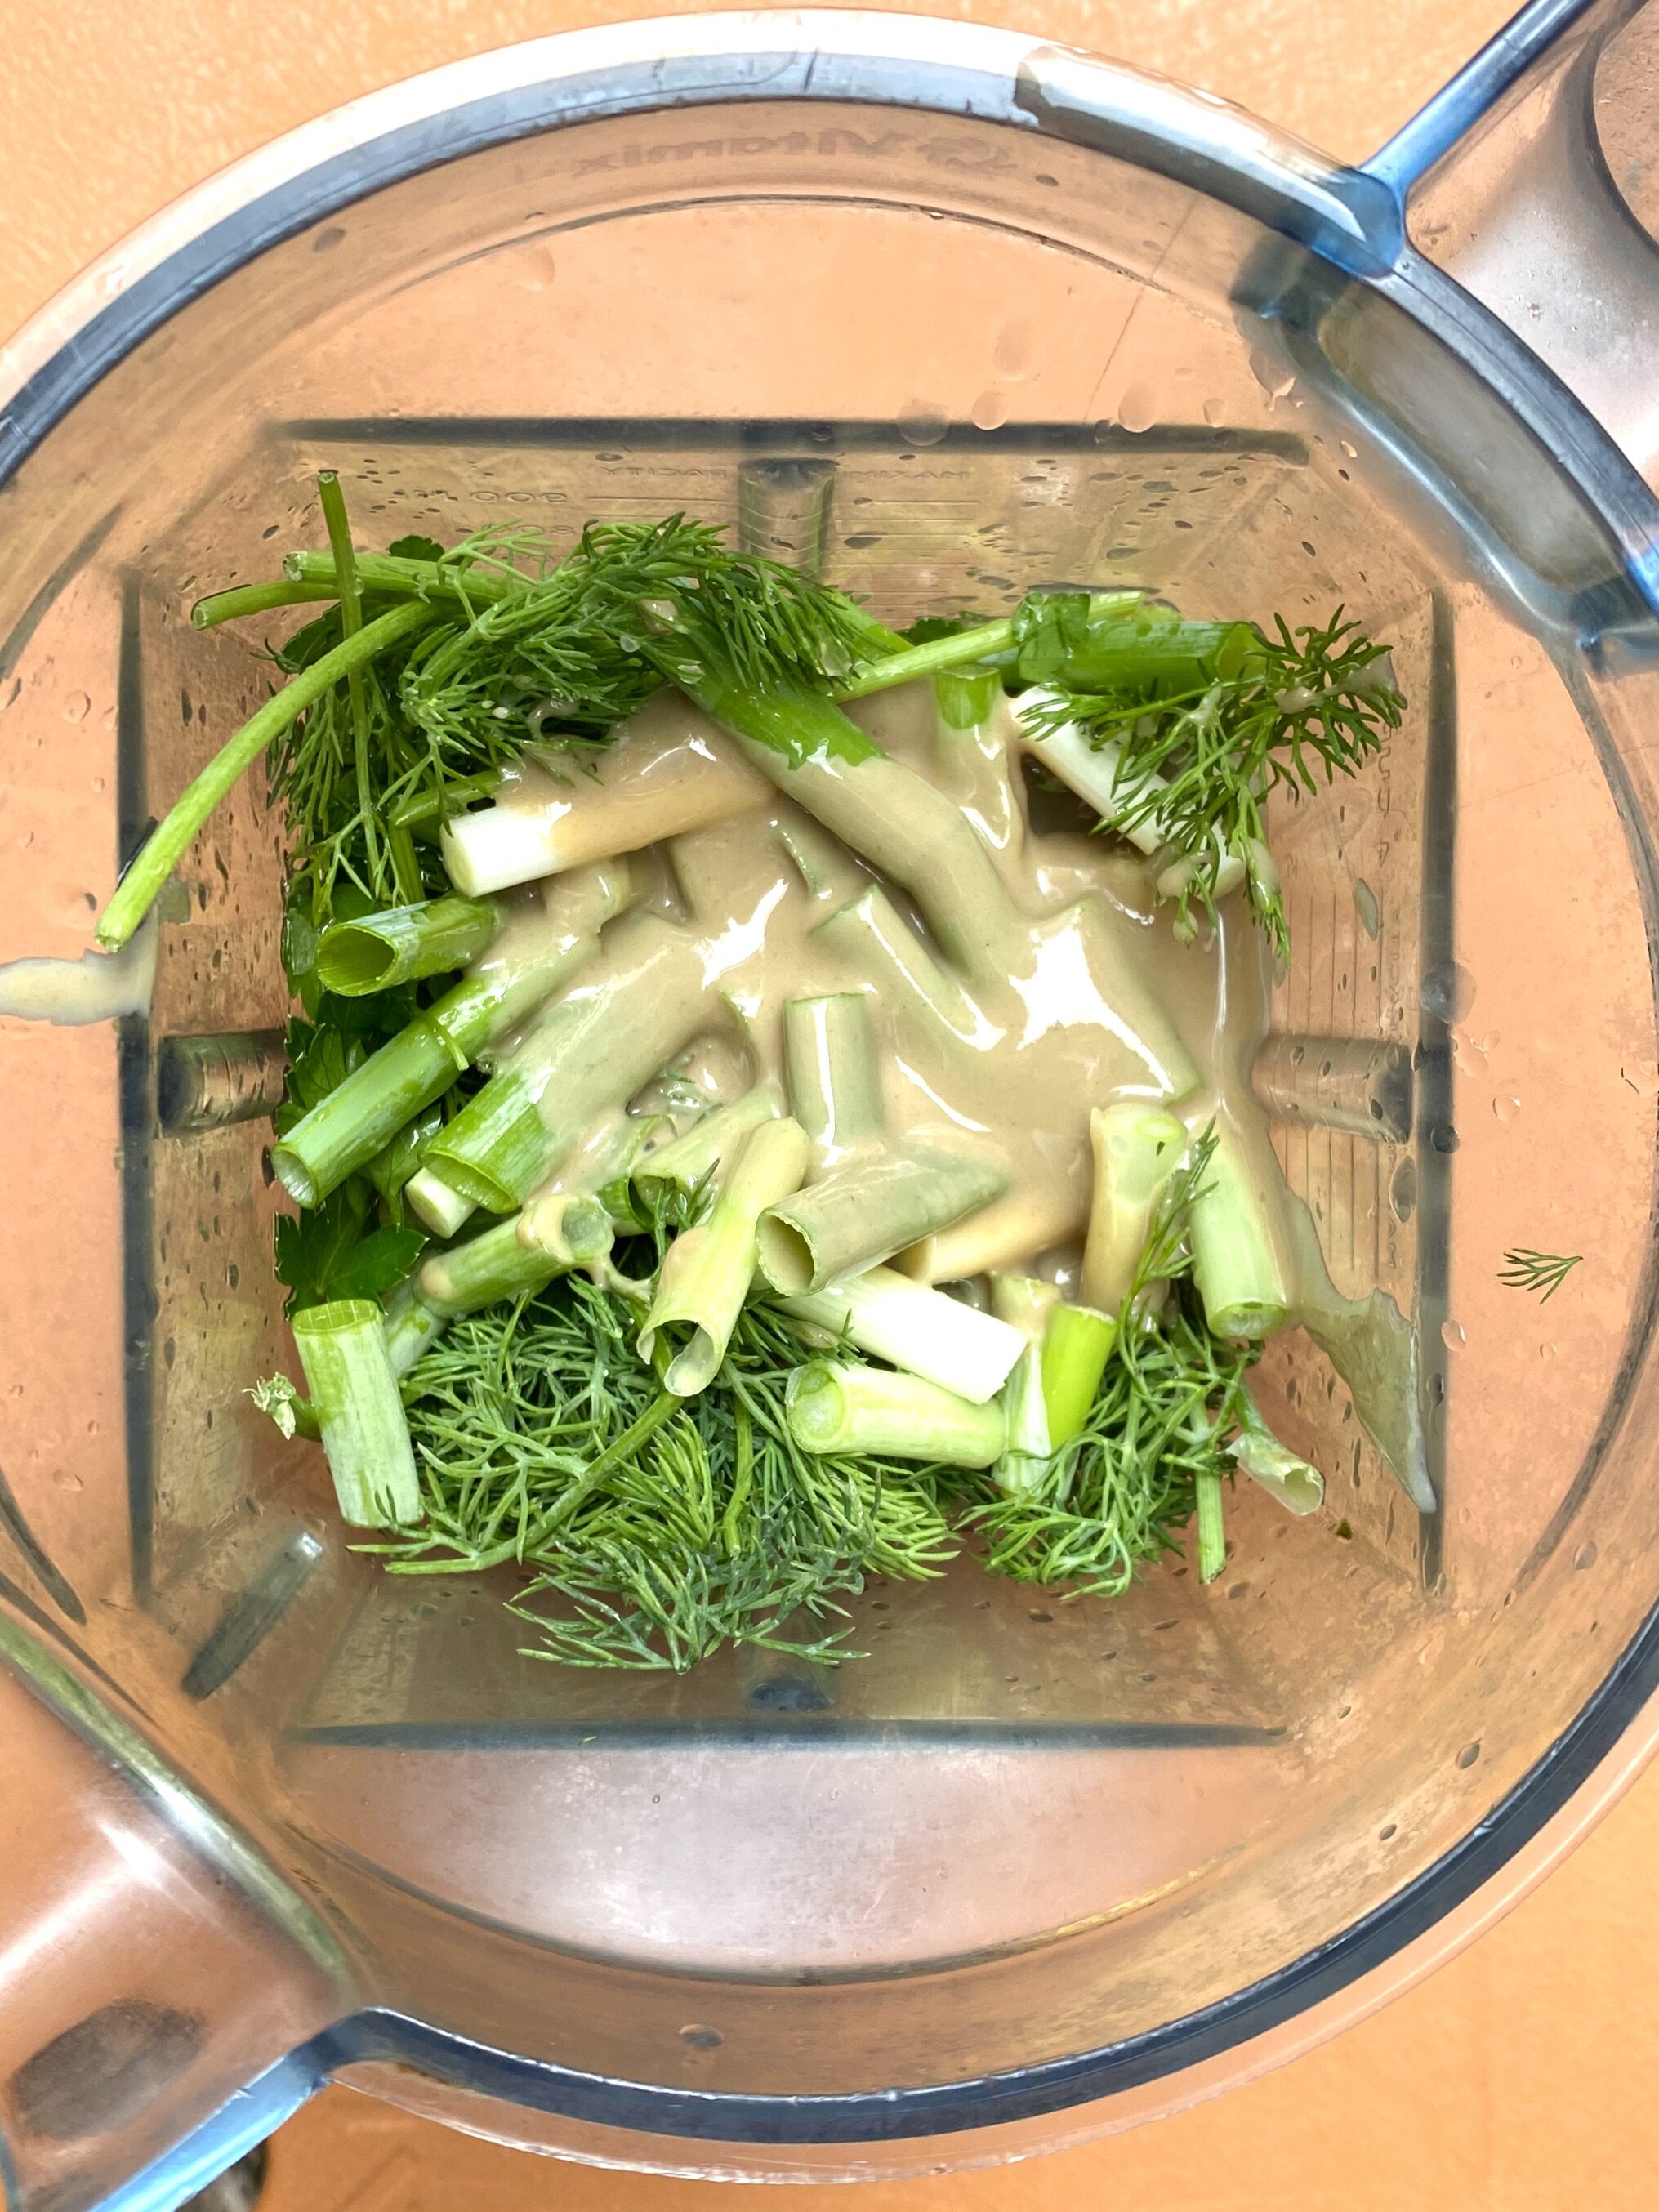 Green tahini ingredients in a blender